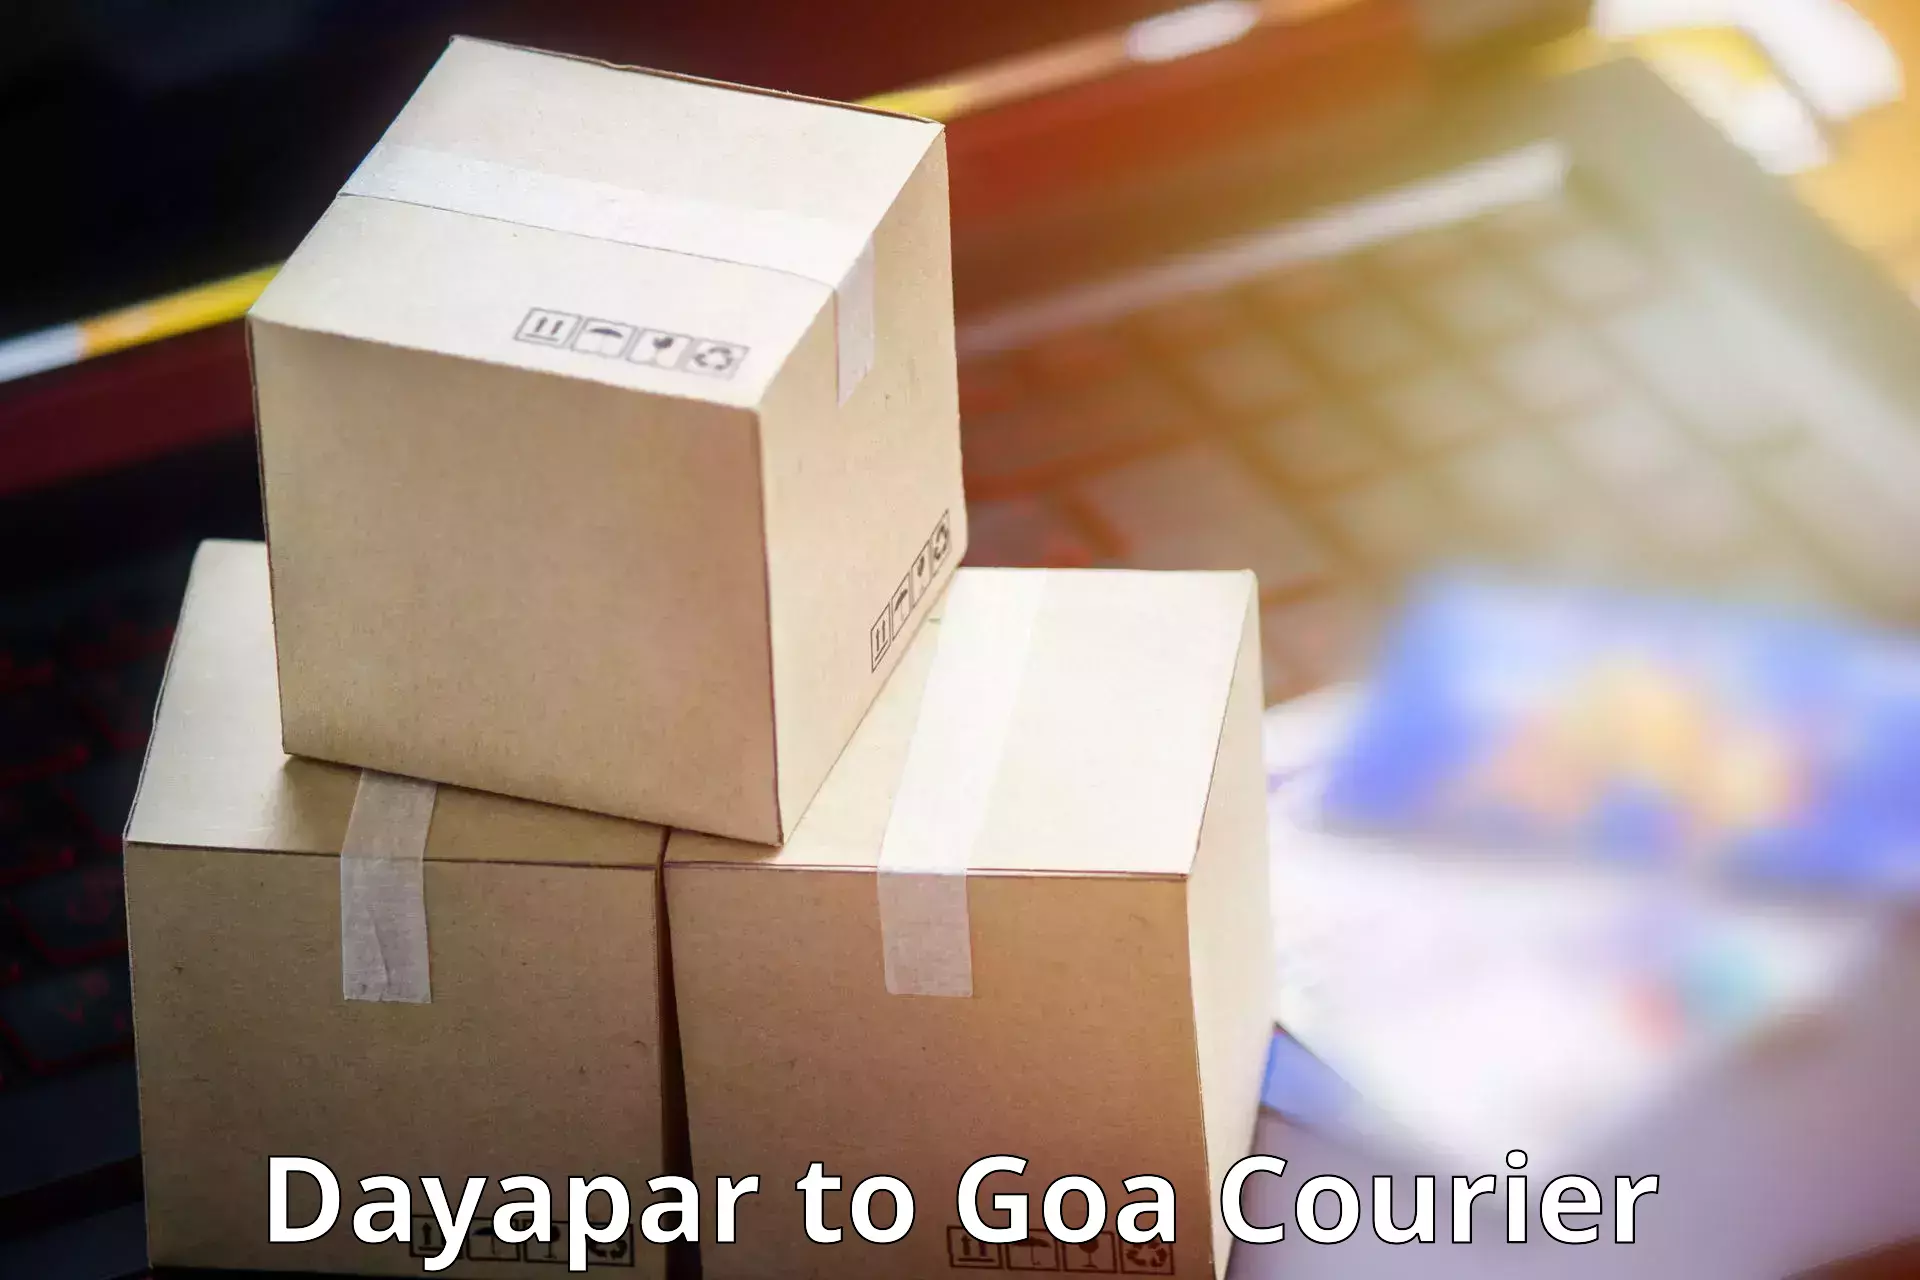 Professional courier services Dayapar to Goa University